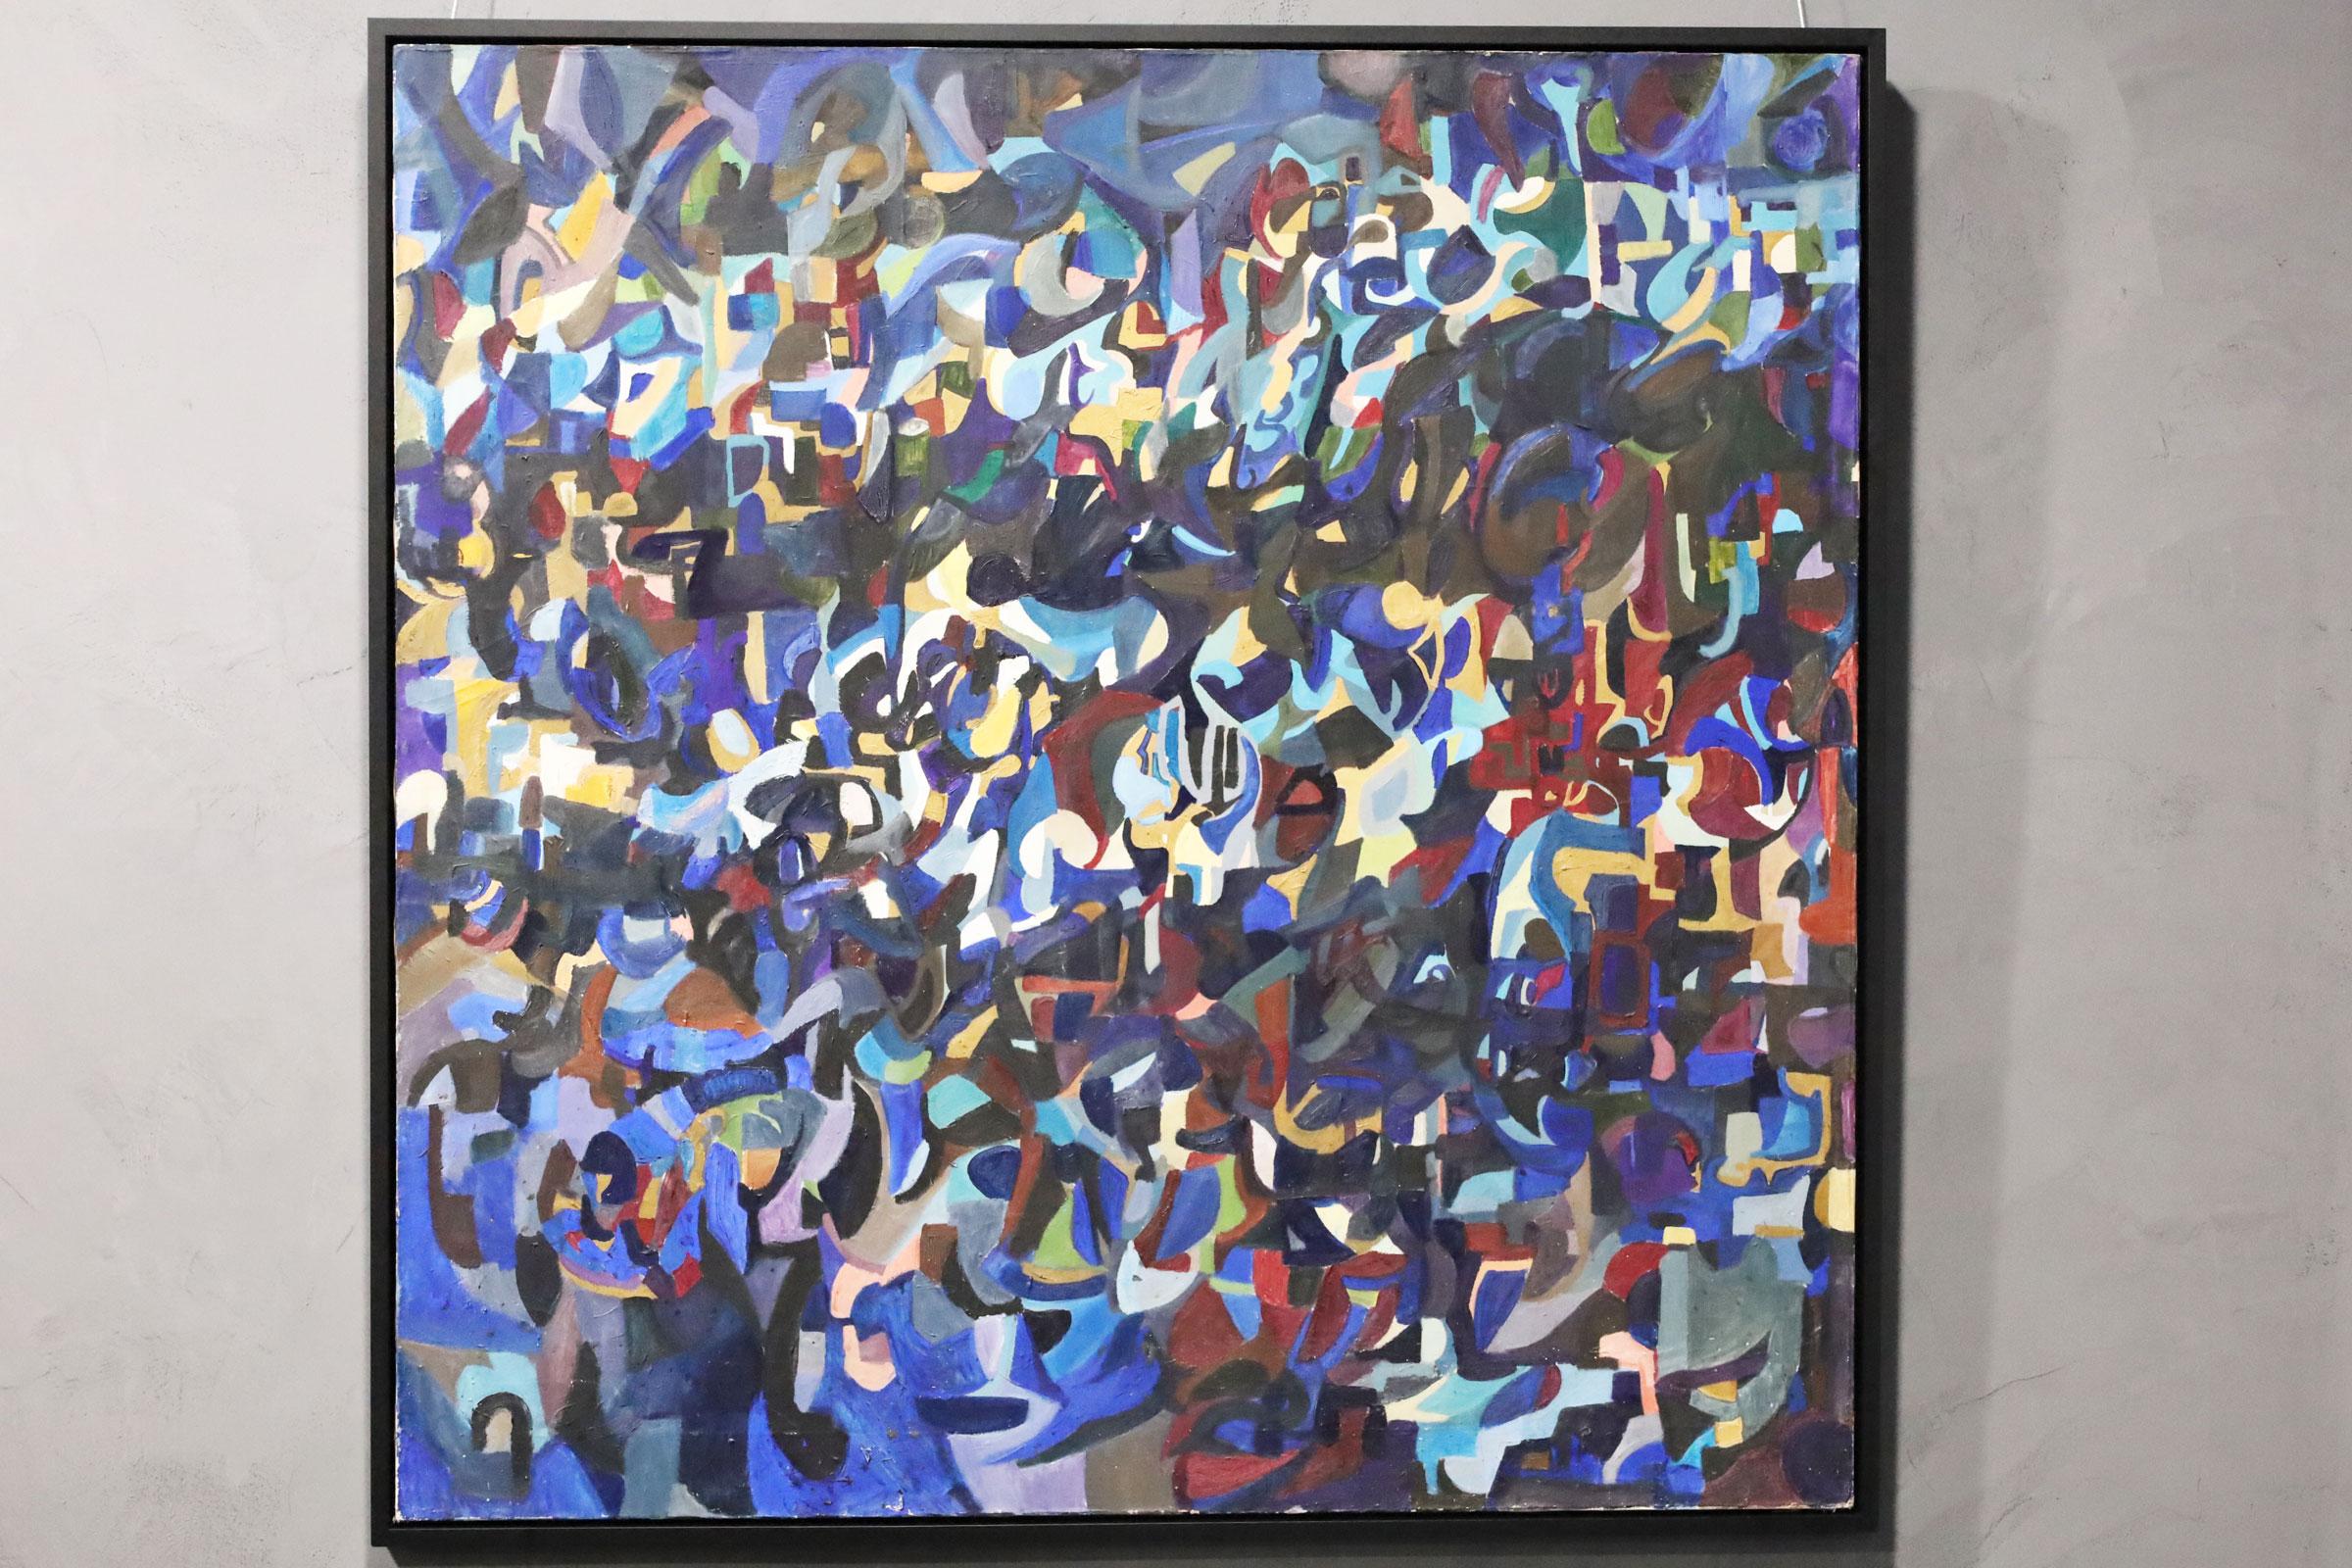 Gezeichnet Nicky S. Kleim, datiert. 1971. Große helle Farben große abstrakte Arbeit. Kunst misst 60